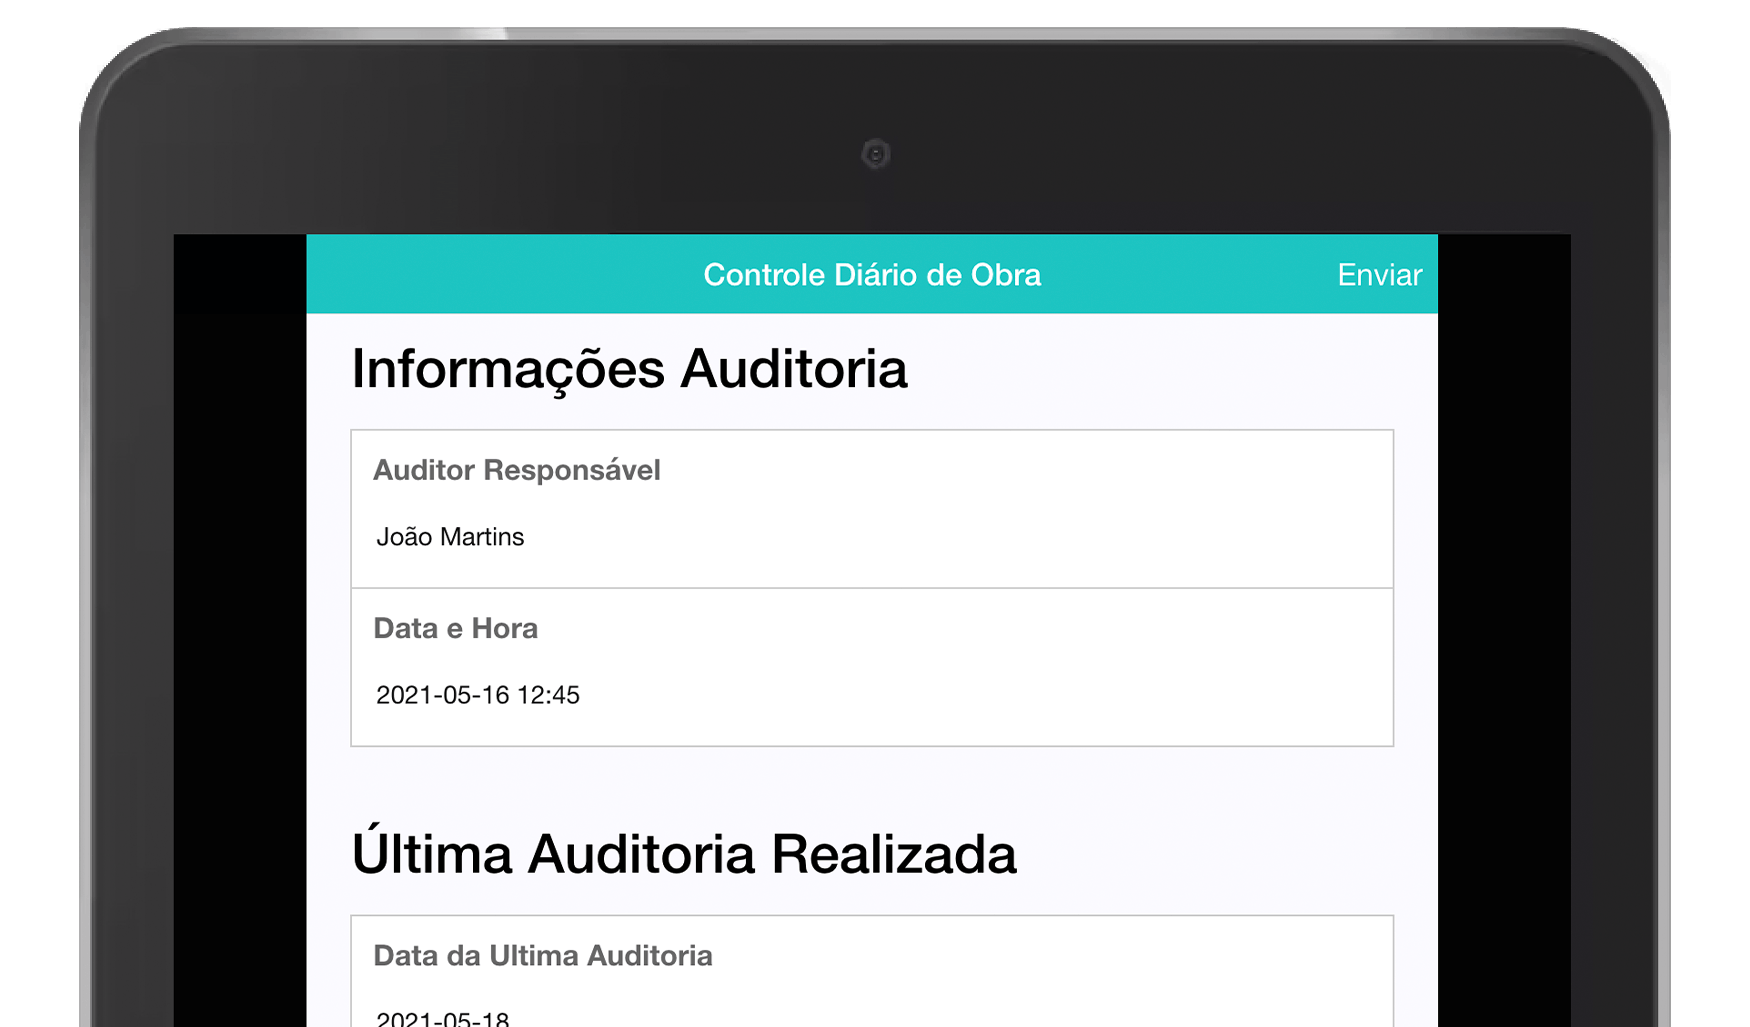 MoreApp Controlo Diário de Obra App